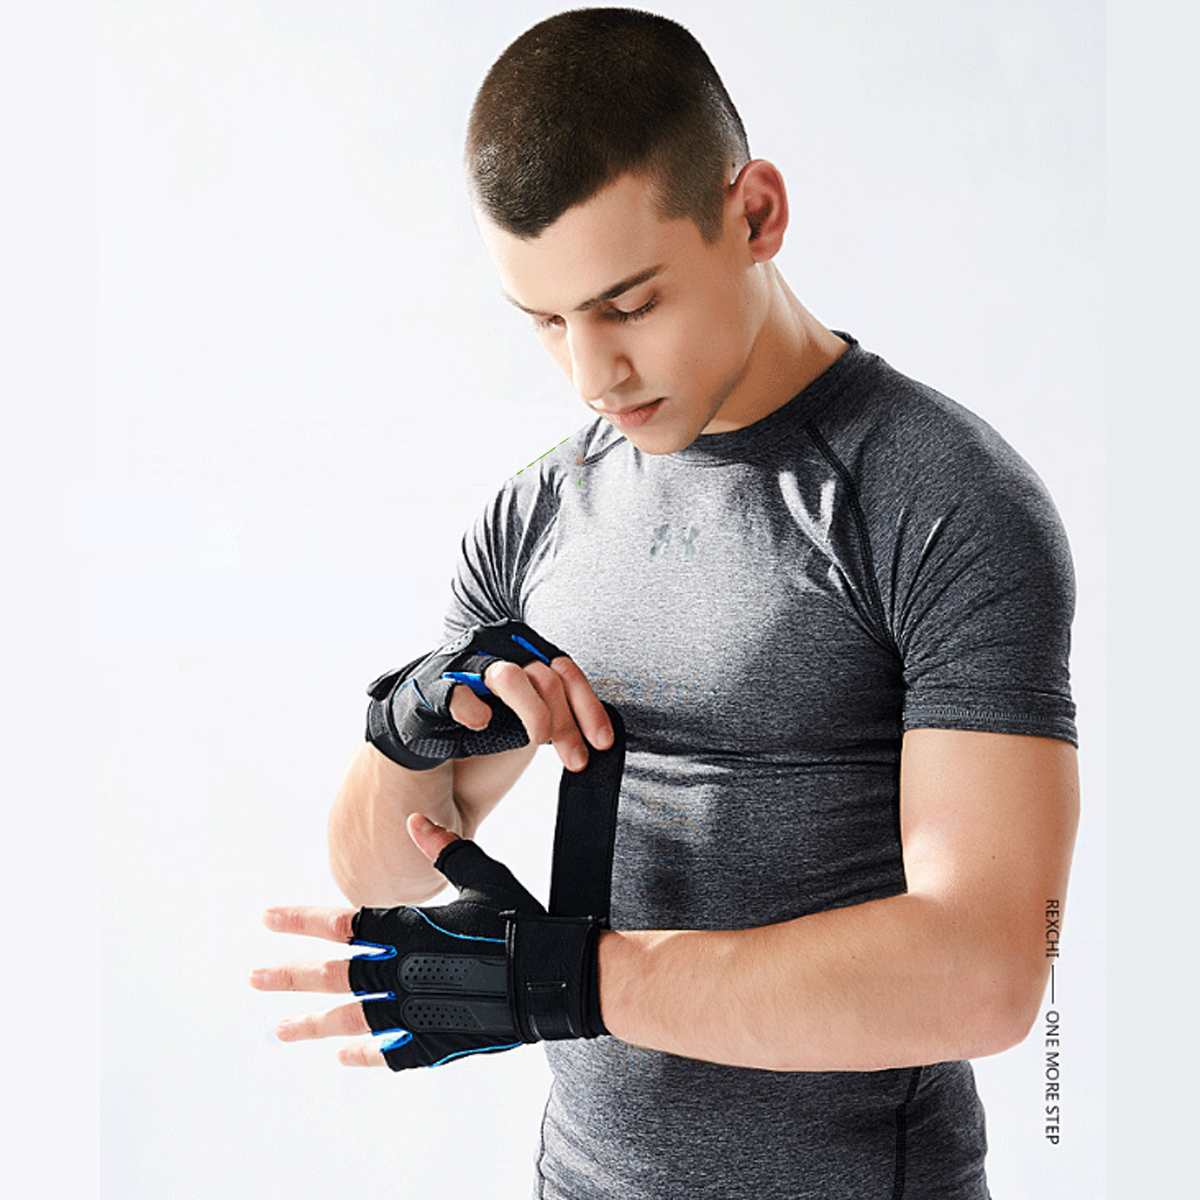 Как выбрать перчатки для фитнеса по виду и размеру
как выбрать перчатки для фитнеса по виду и размеру